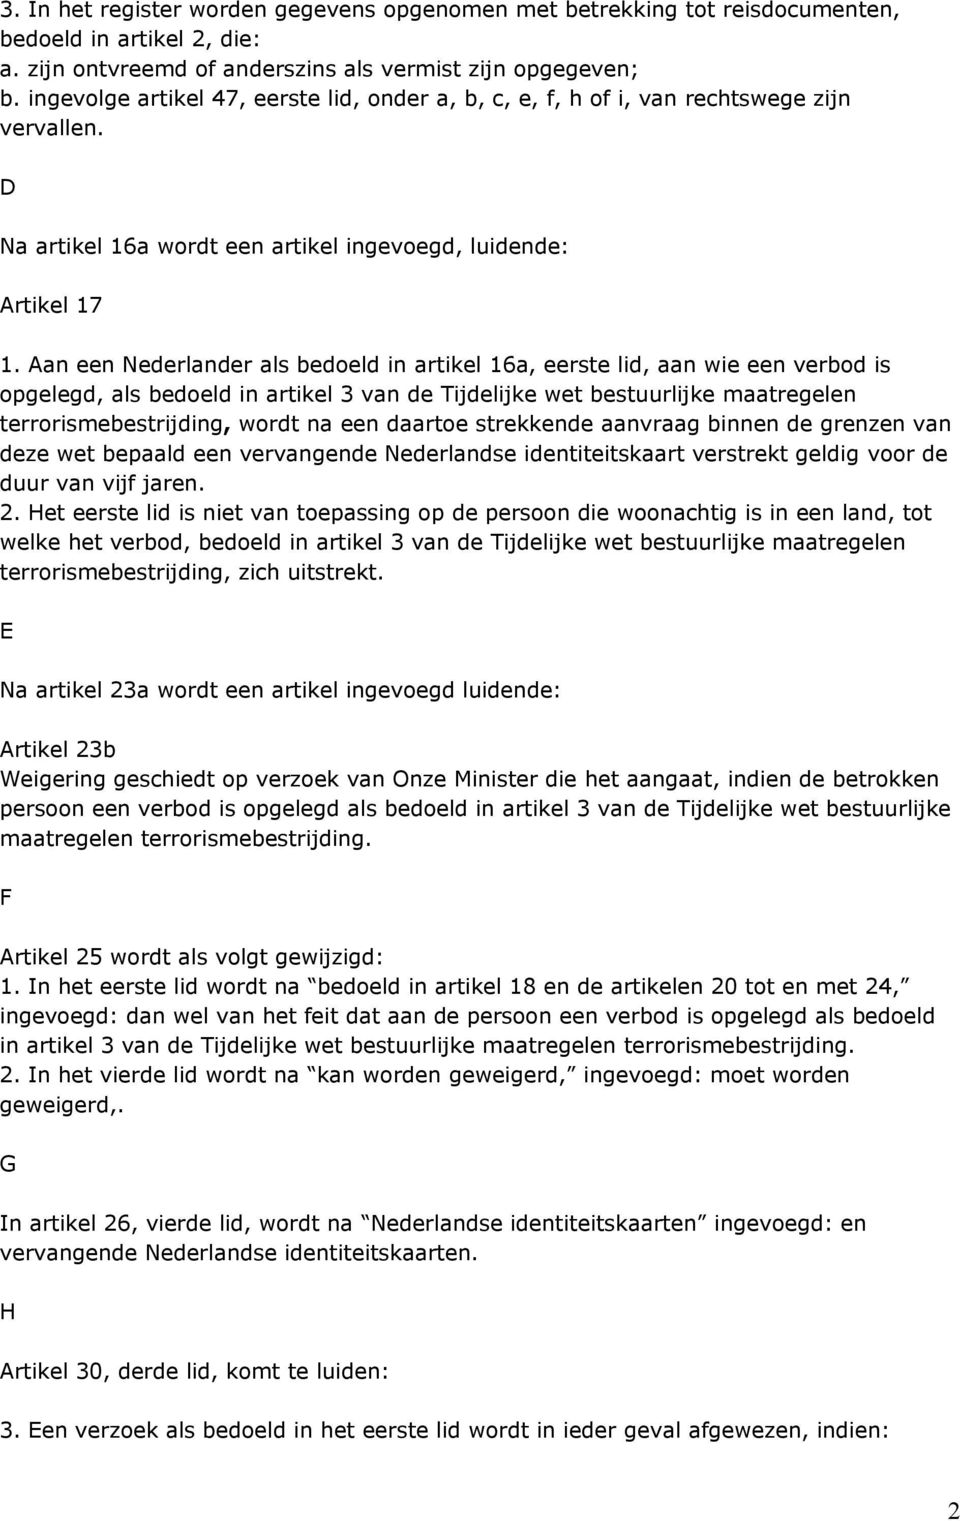 Aan een Nederlander als bedoeld in artikel 16a, eerste lid, aan wie een verbod is opgelegd, als bedoeld in artikel 3 van de Tijdelijke wet bestuurlijke maatregelen terrorismebestrijding, wordt na een